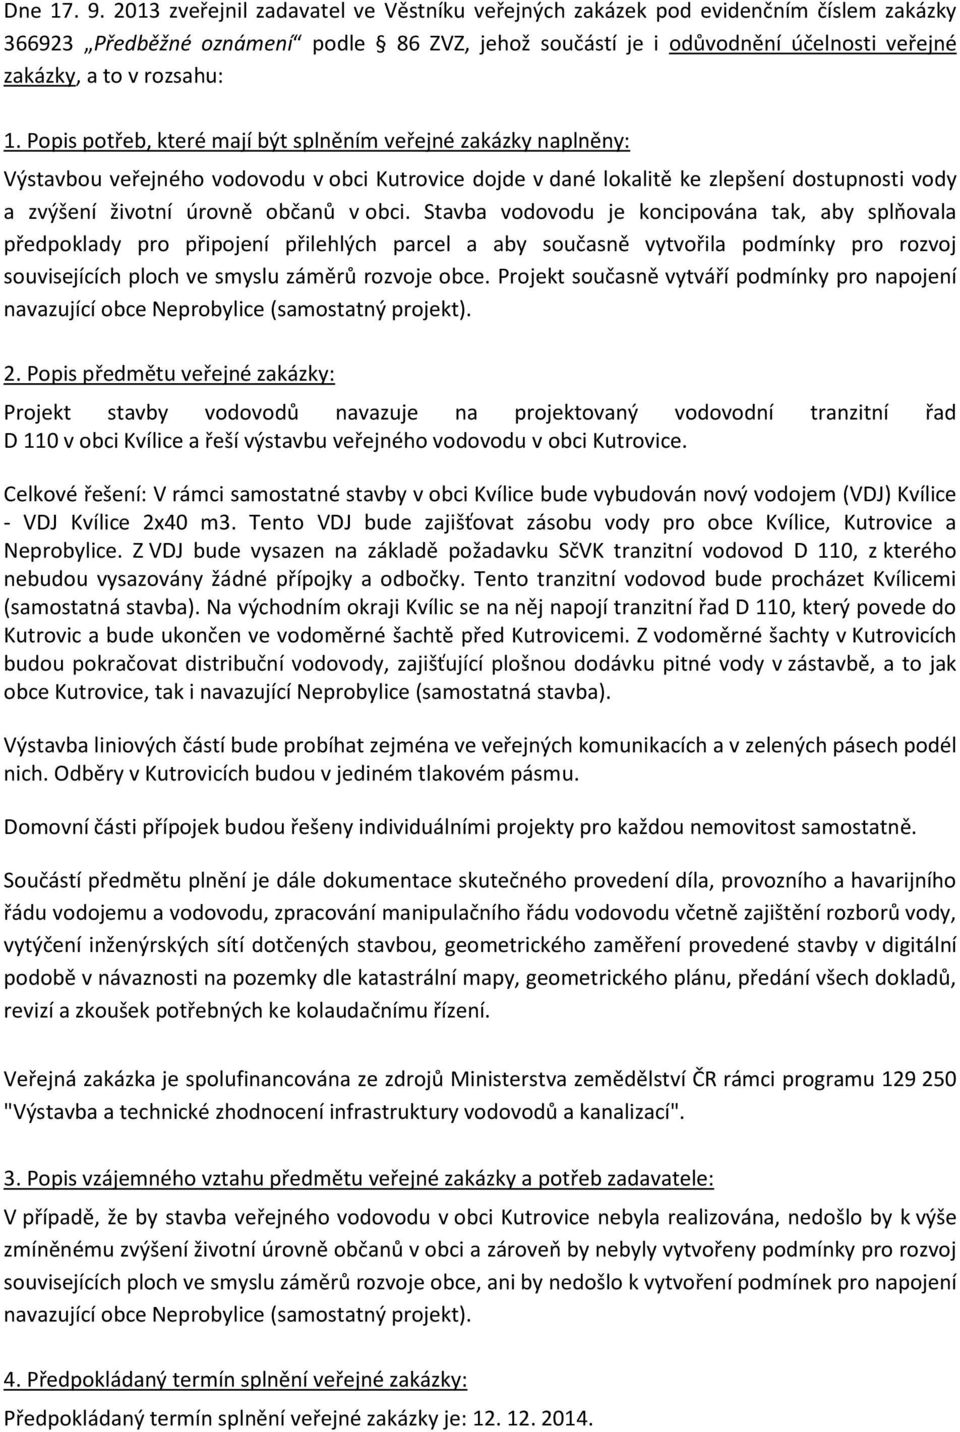 1. Popis potřeb, které mají být splněním veřejné zakázky naplněny: Výstavbou veřejného vodovodu v obci Kutrovice dojde v dané lokalitě ke zlepšení dostupnosti vody a zvýšení životní úrovně občanů v